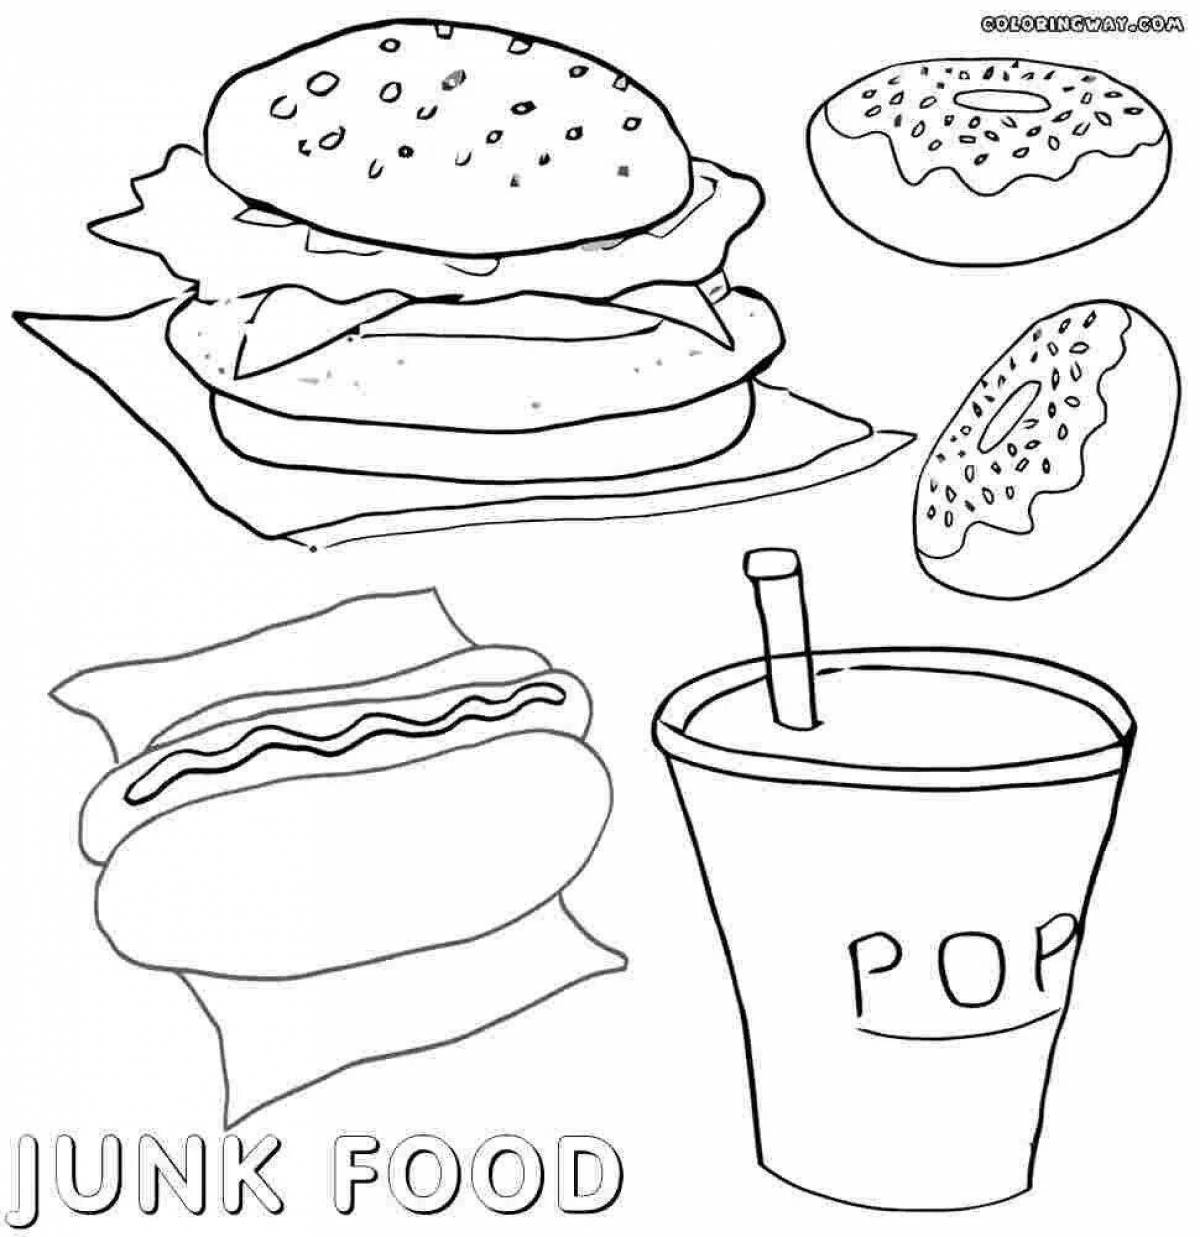 Junk food #6